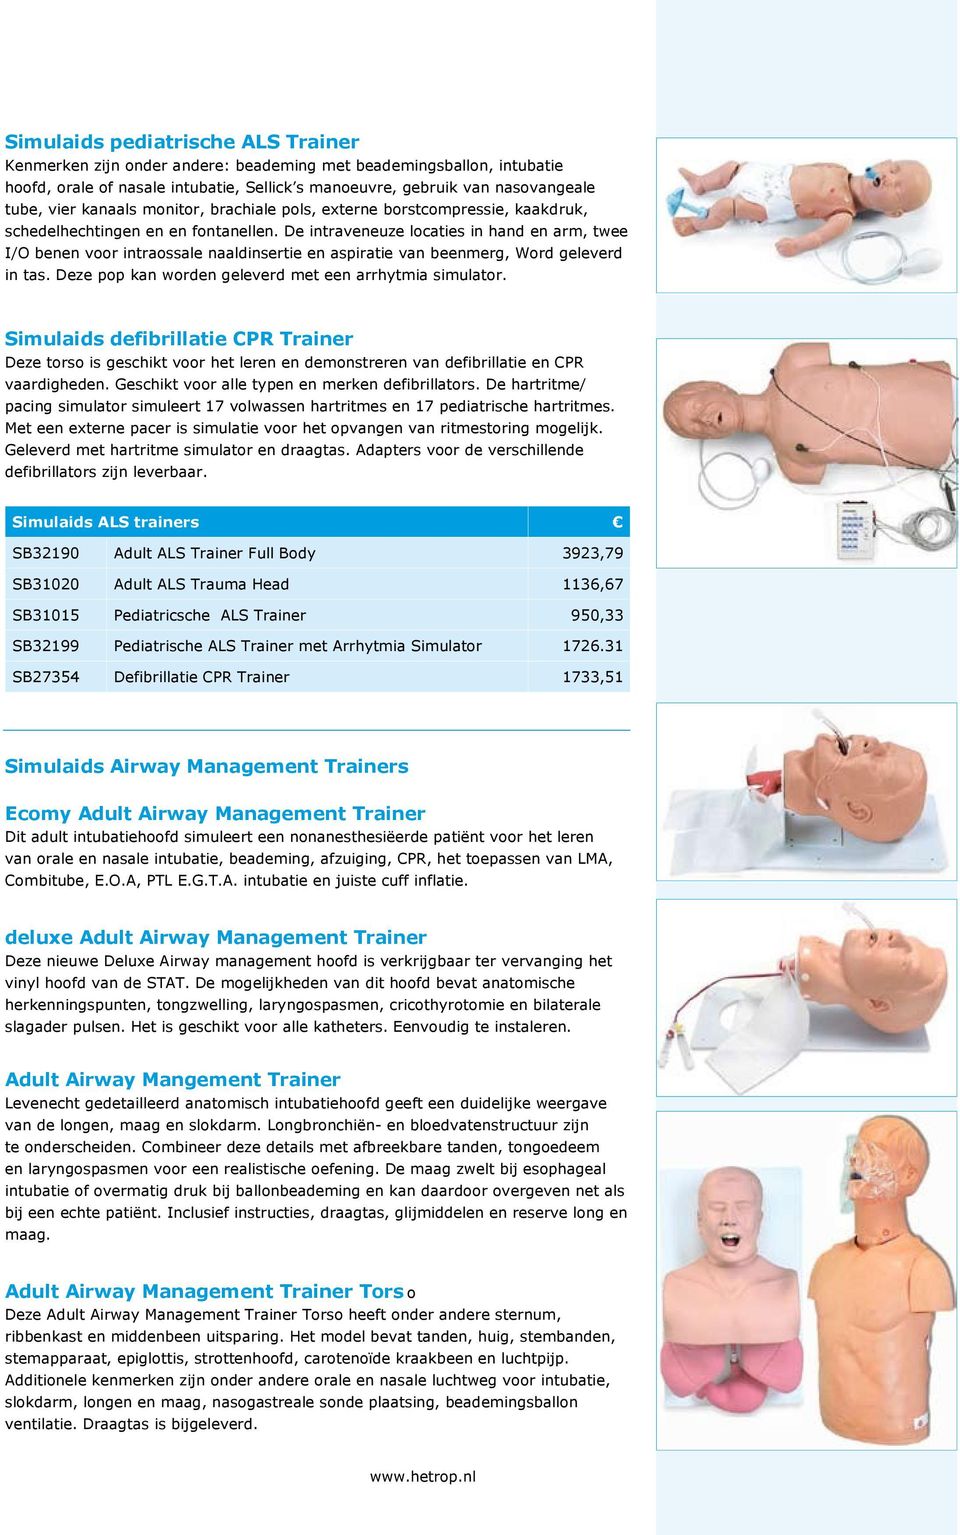 aspiratie van beenmerg, Word geleverd in tas Deze pop kan worden geleverd met een arrhytmia simulator Simulaids defibrillatie CPR Trainer Deze torso is geschikt voor het leren en demonstreren van